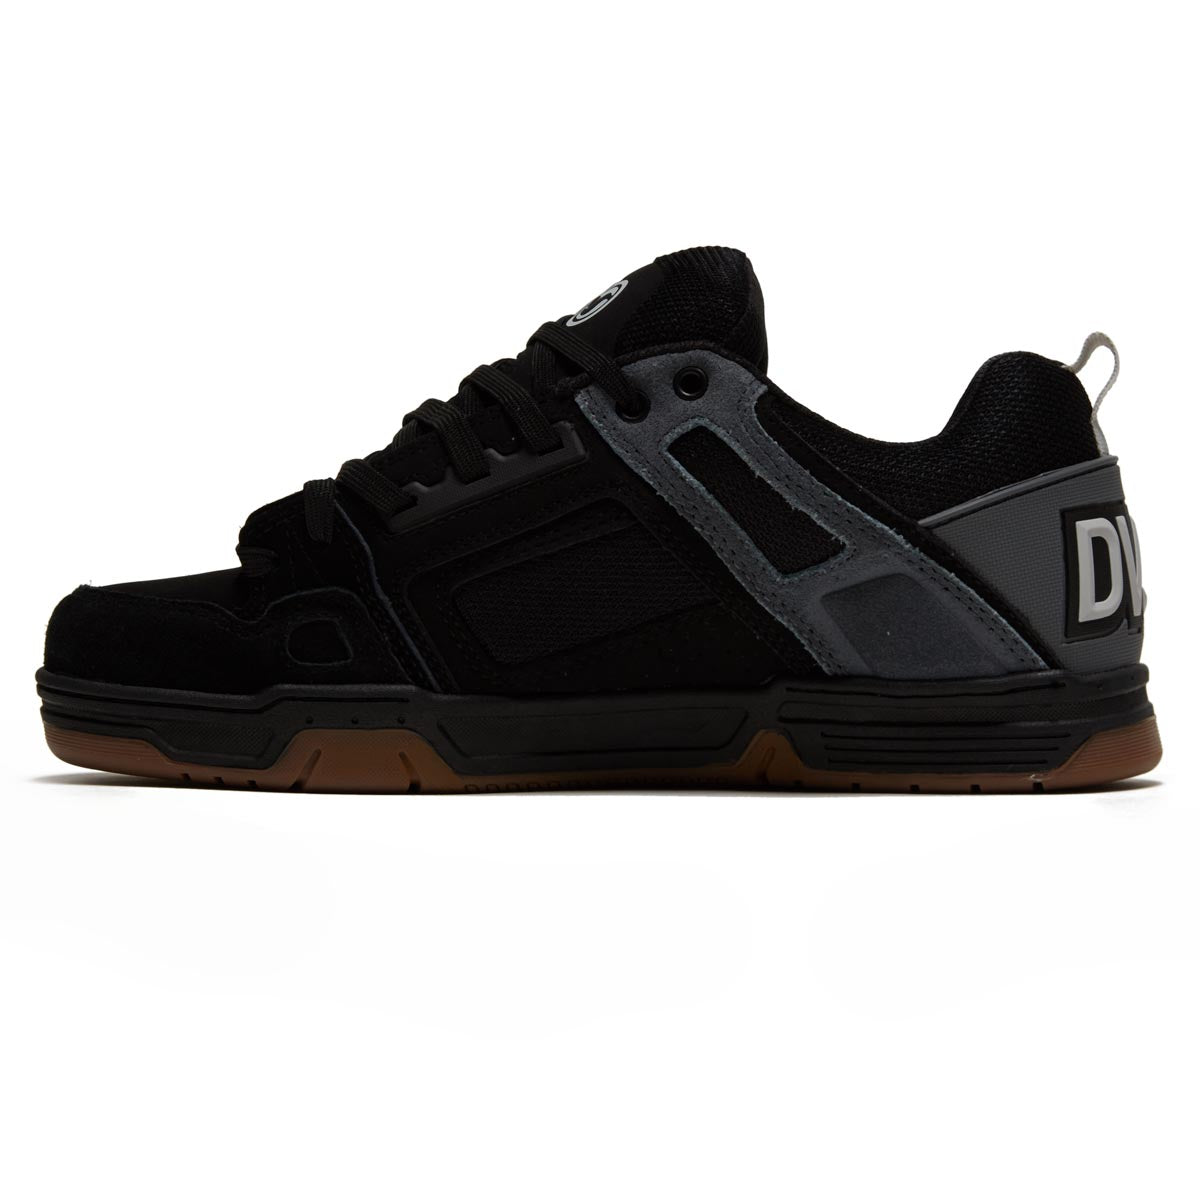 DVS Comanche Shoes - Black/Charcoal/Gray Suede image 2